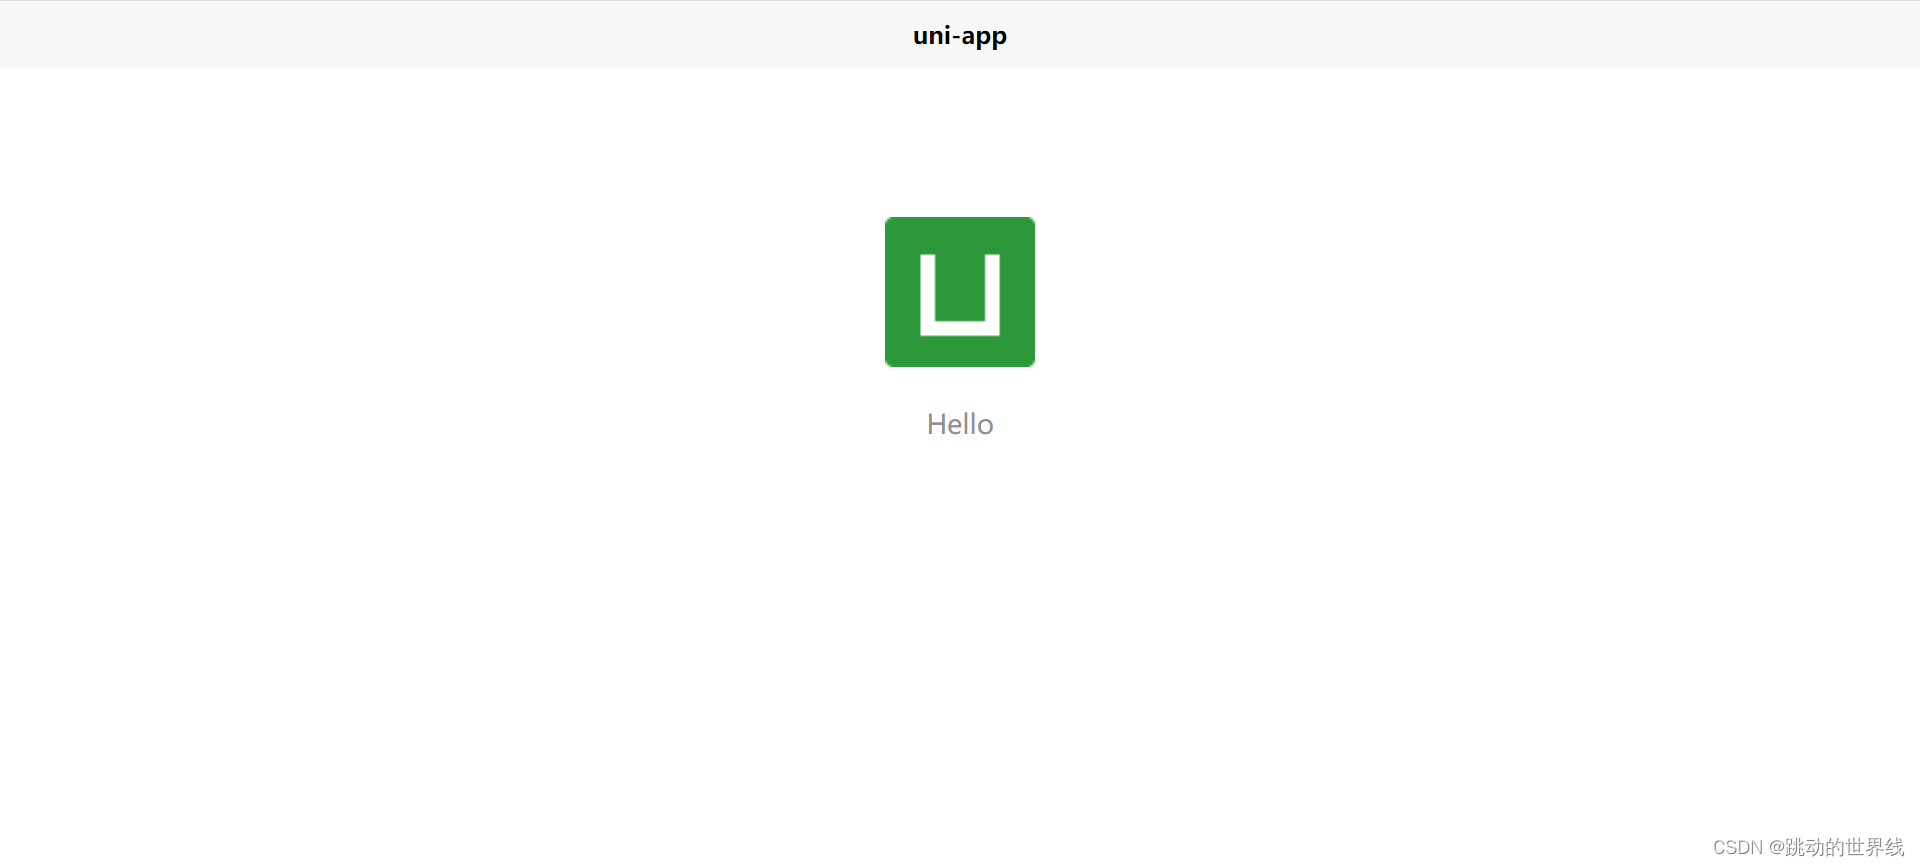 Uniapp uni-app学习与快速上手